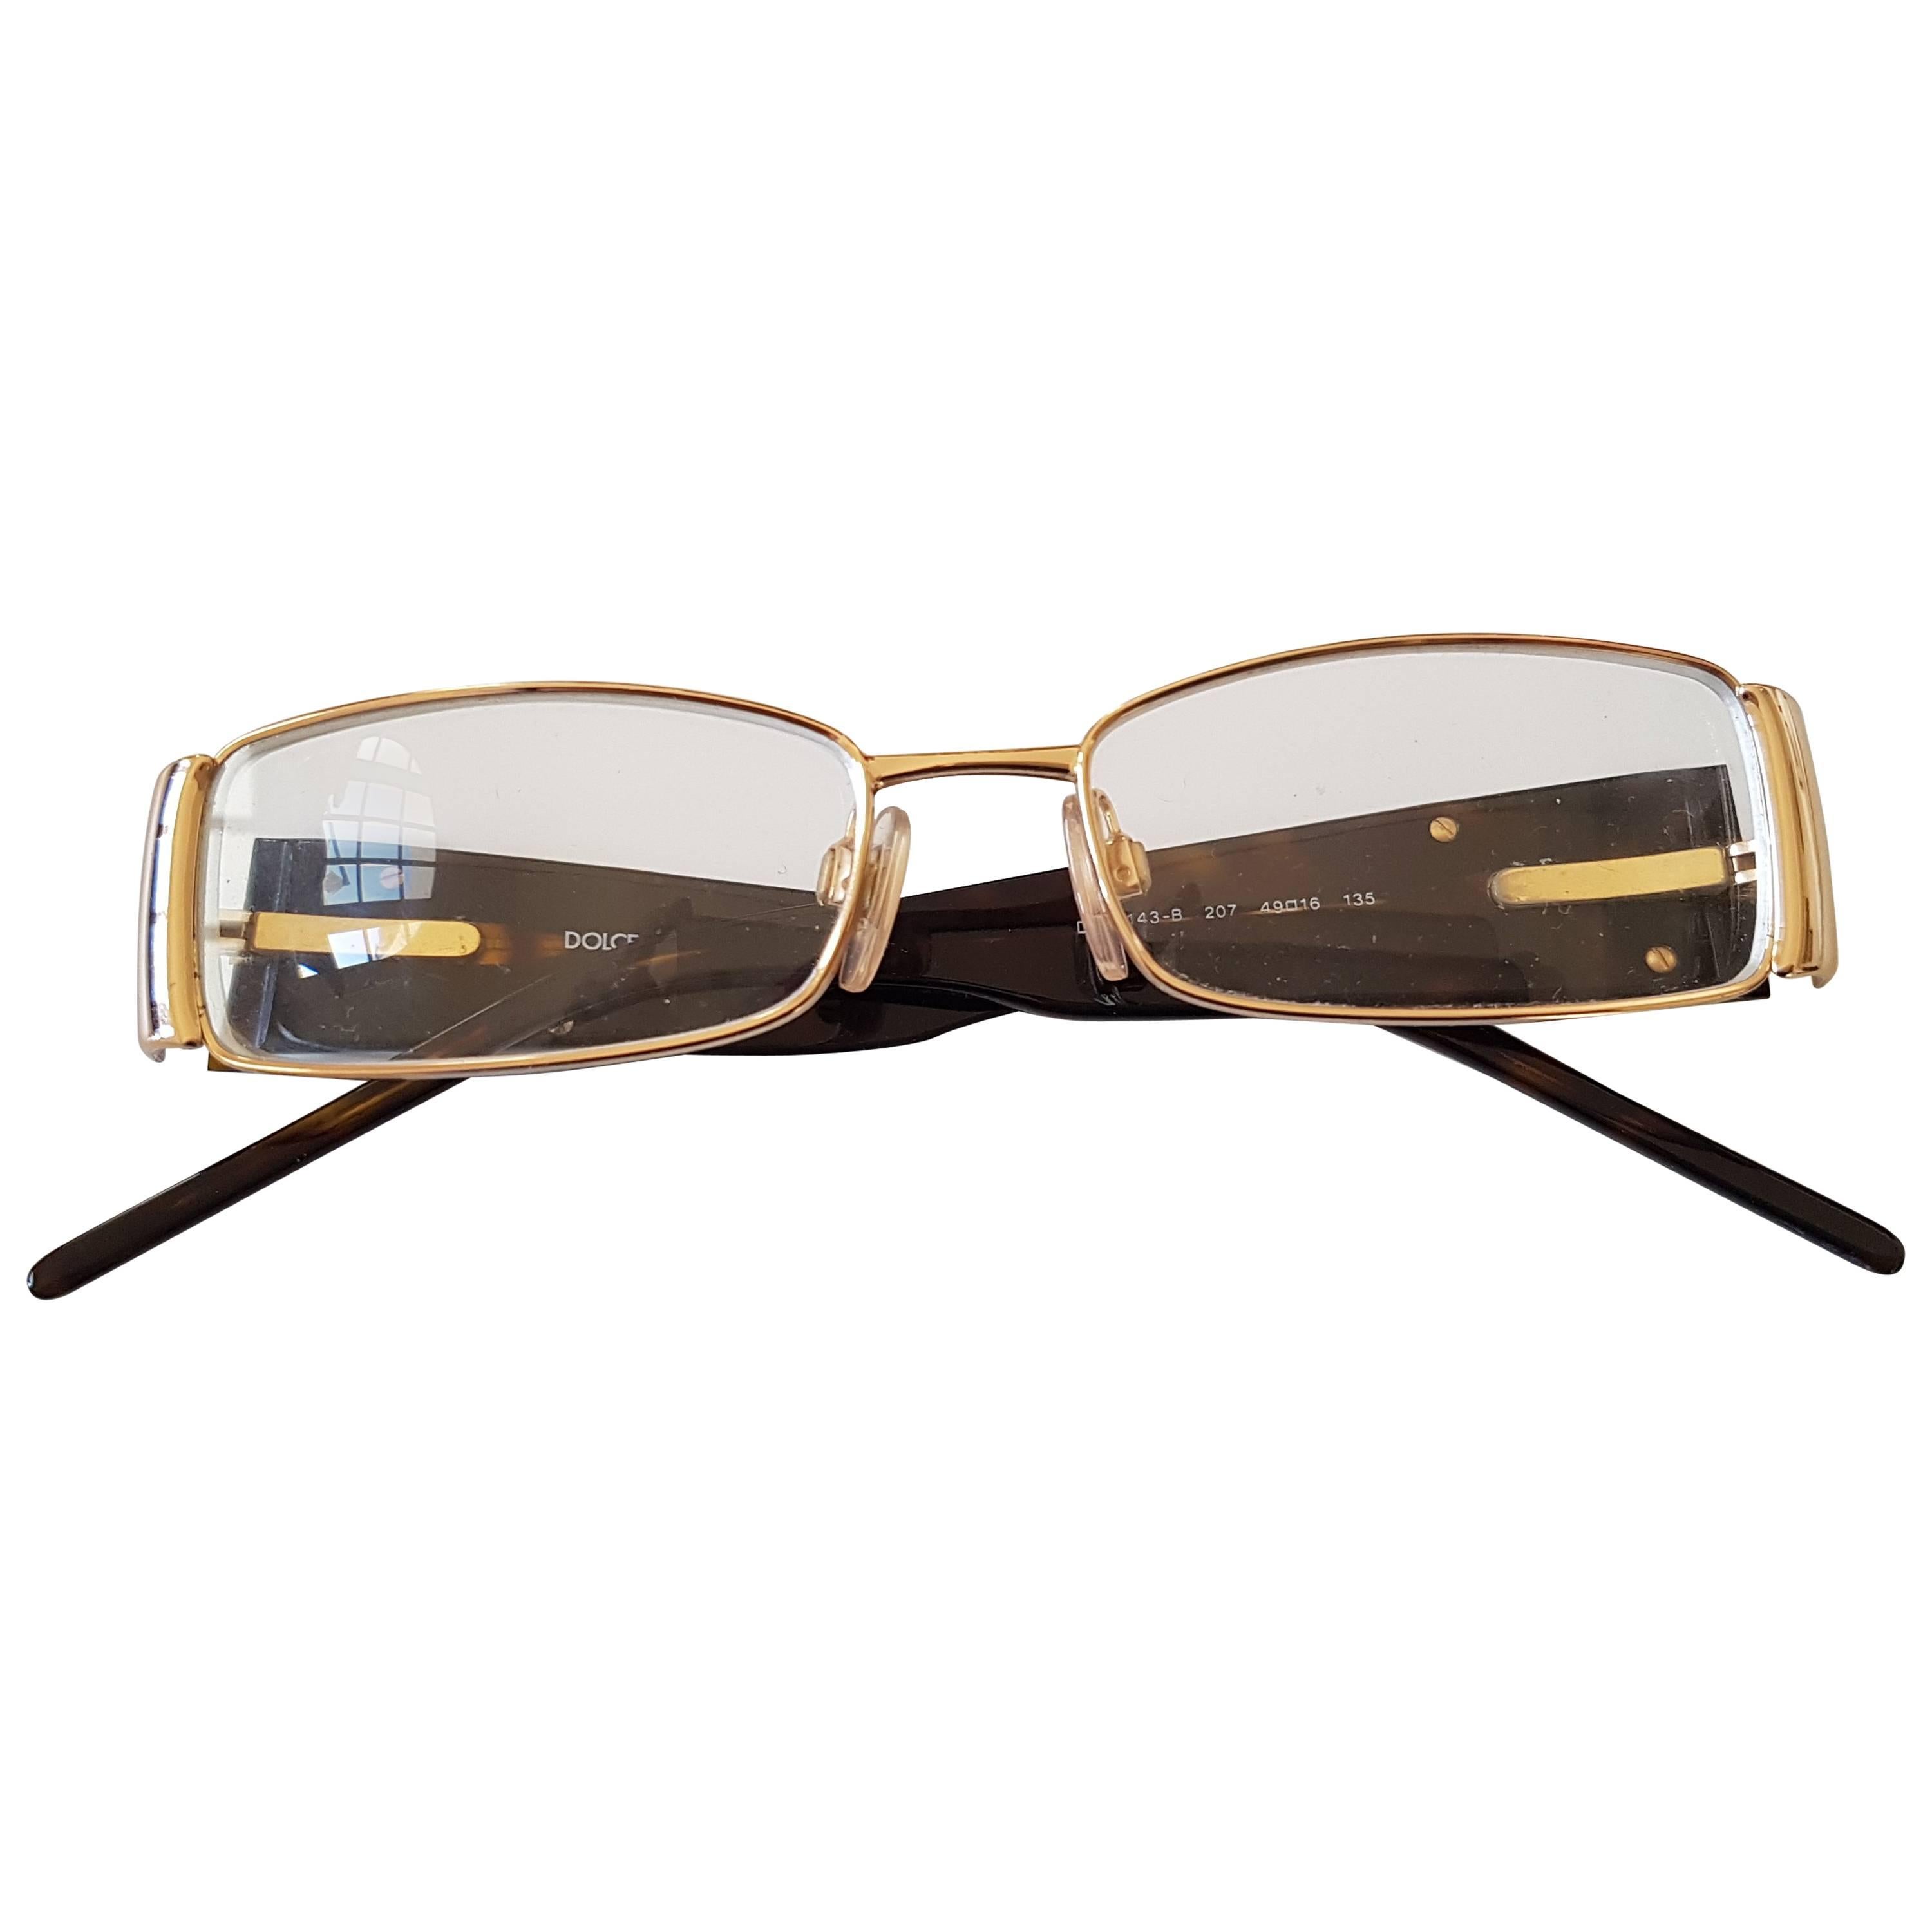 Dolce & Gabbana tortoise frame glasses